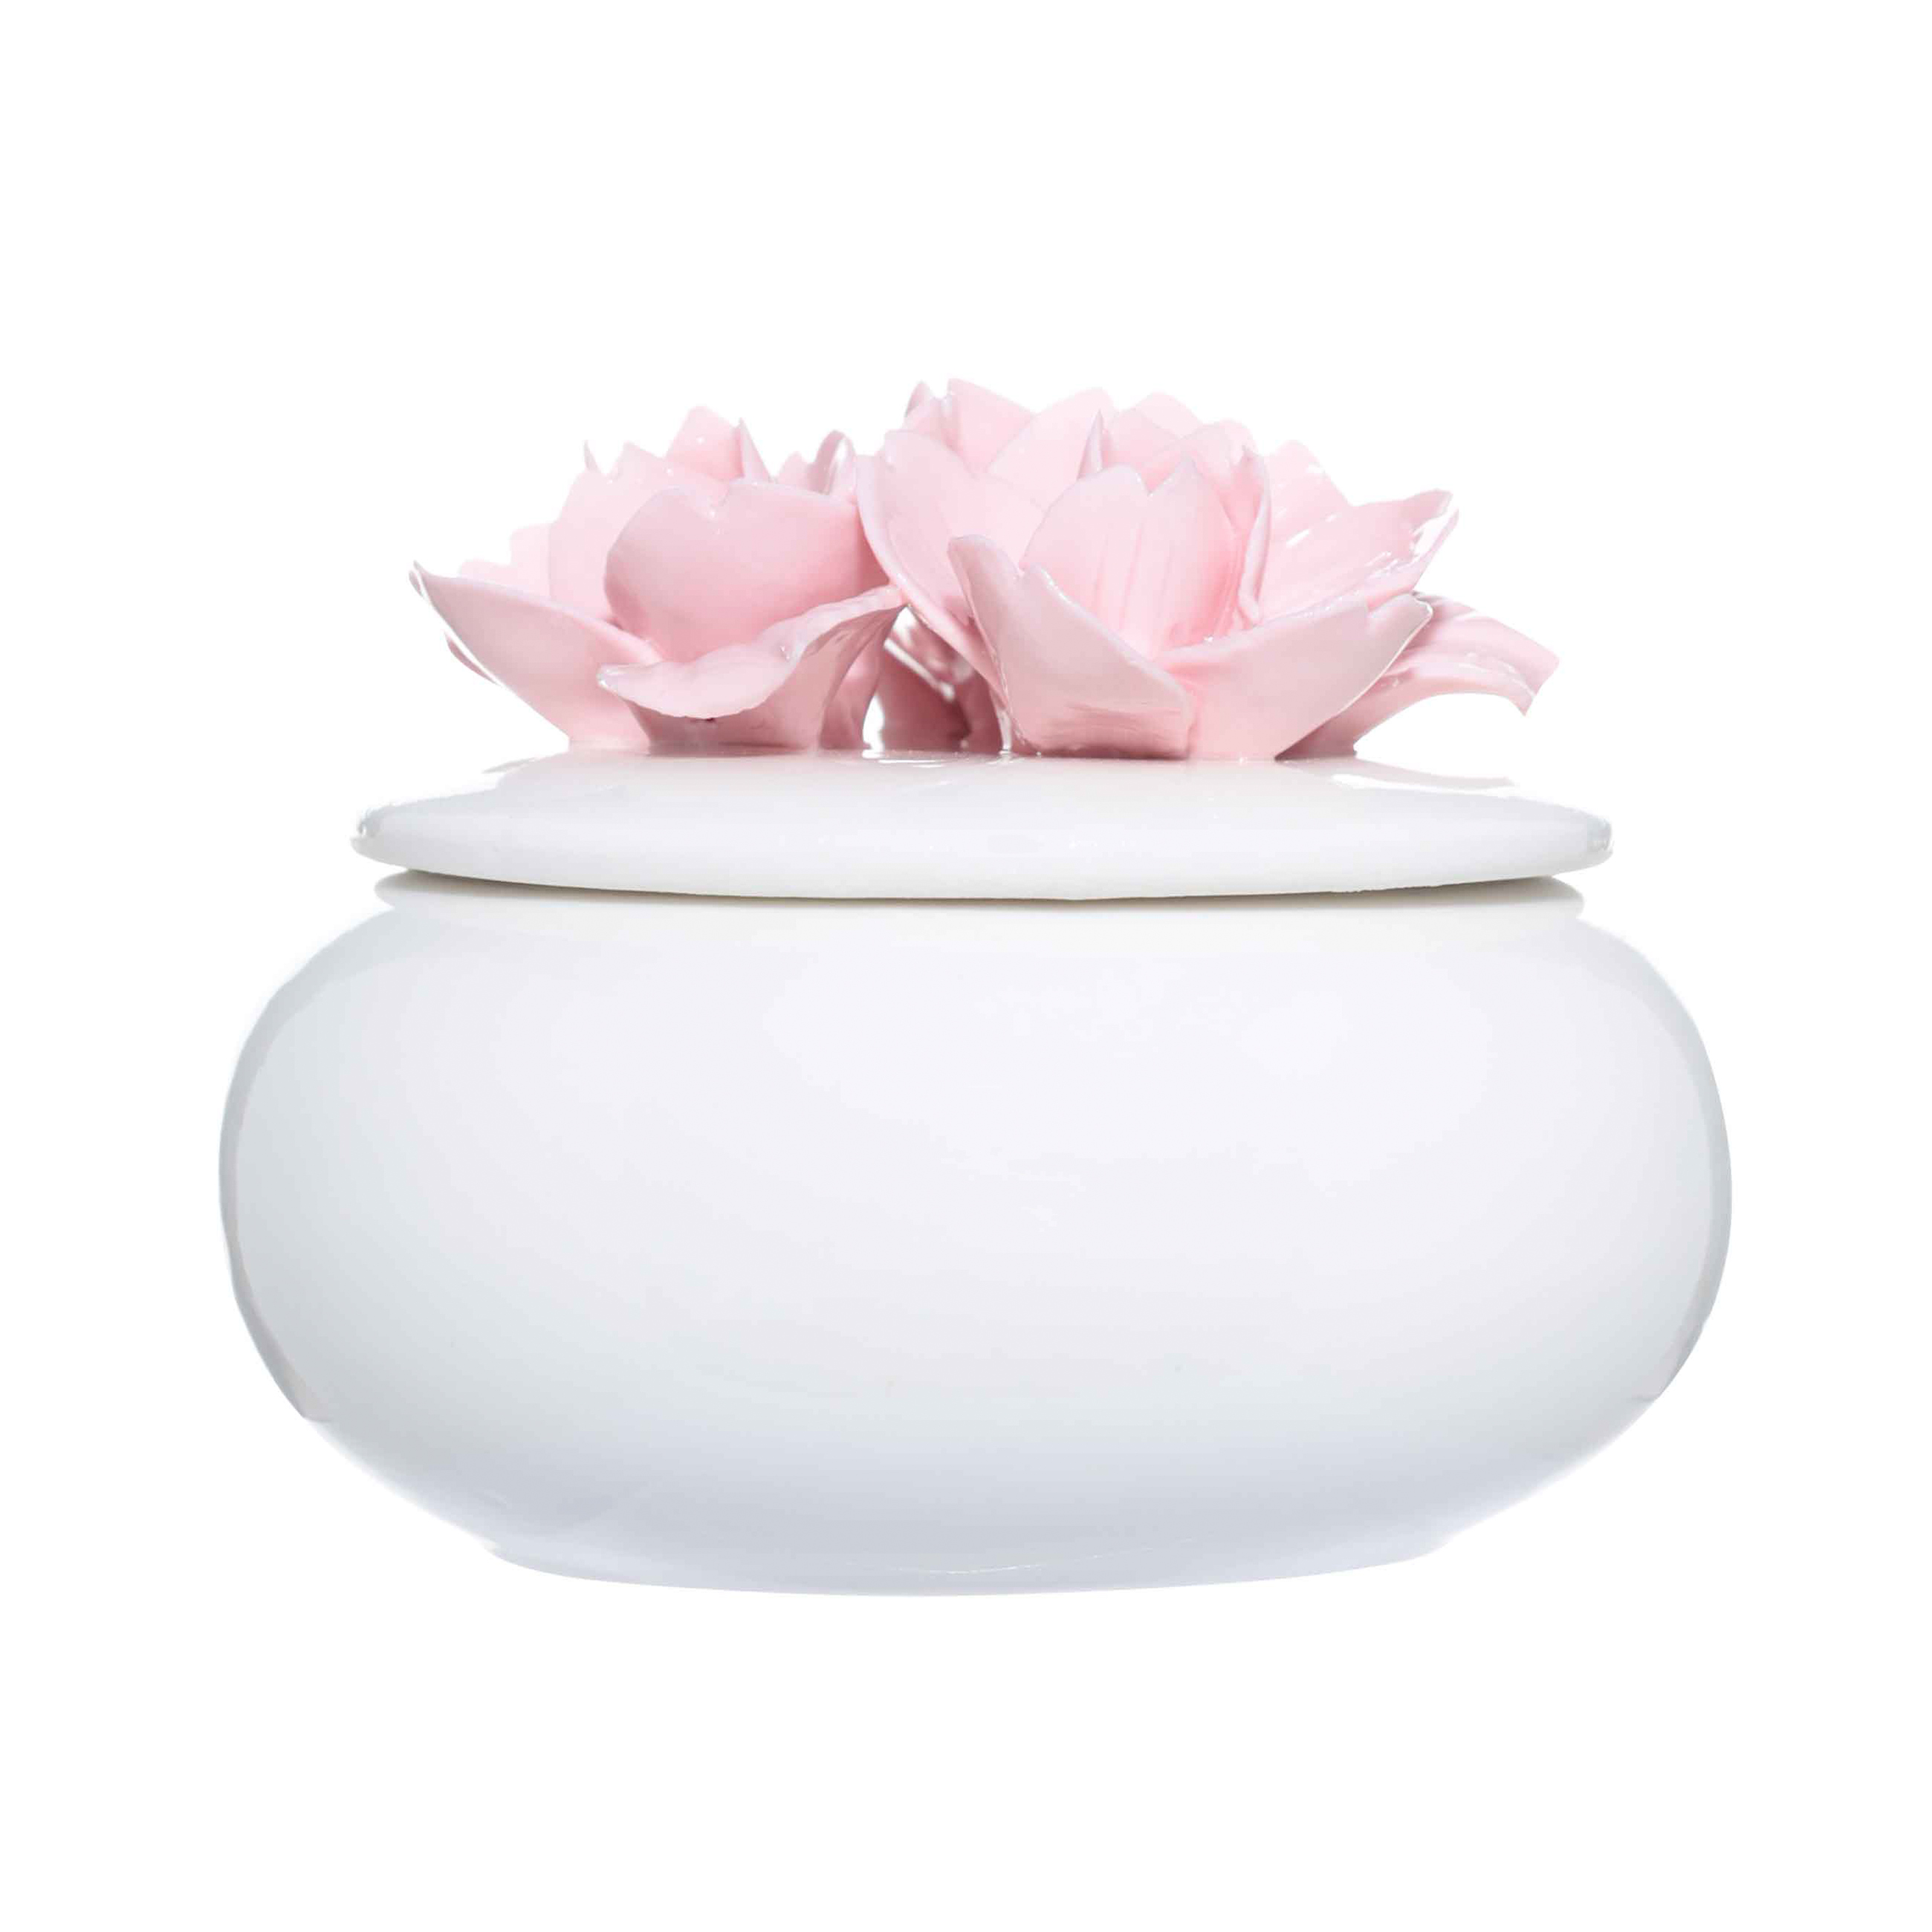 Шкатулка для украшений, 11х9 см, керамика, белая, Цветы, Magnolia изображение № 2